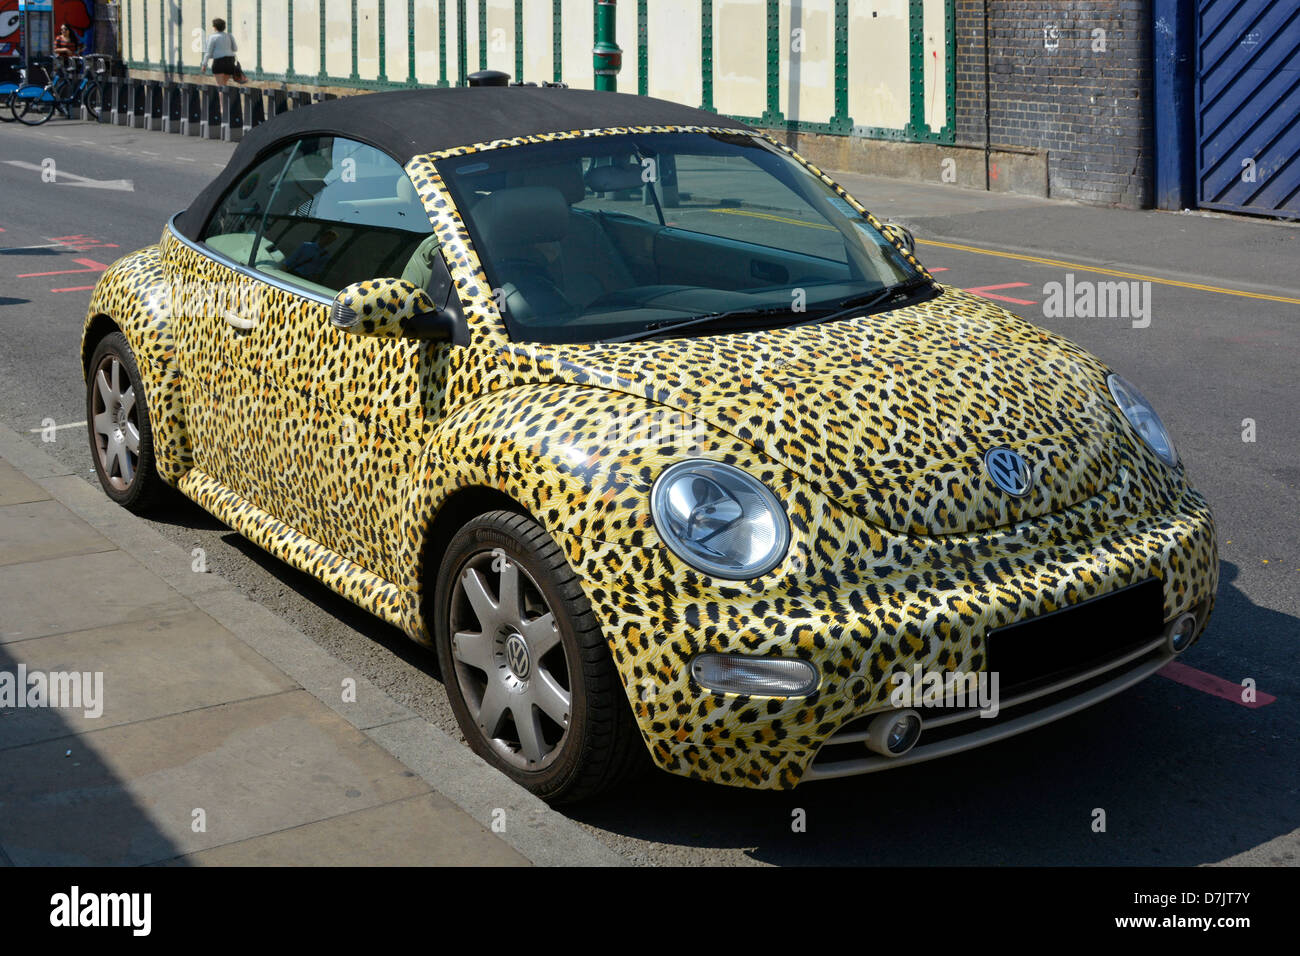 Leopards Skin print couvre la carrosserie de Volkswagen VW Beetle voiture avec toit en vinyle noir garé dans Brick Lane Tower Hamlets East London Angleterre Royaume-Uni Banque D'Images